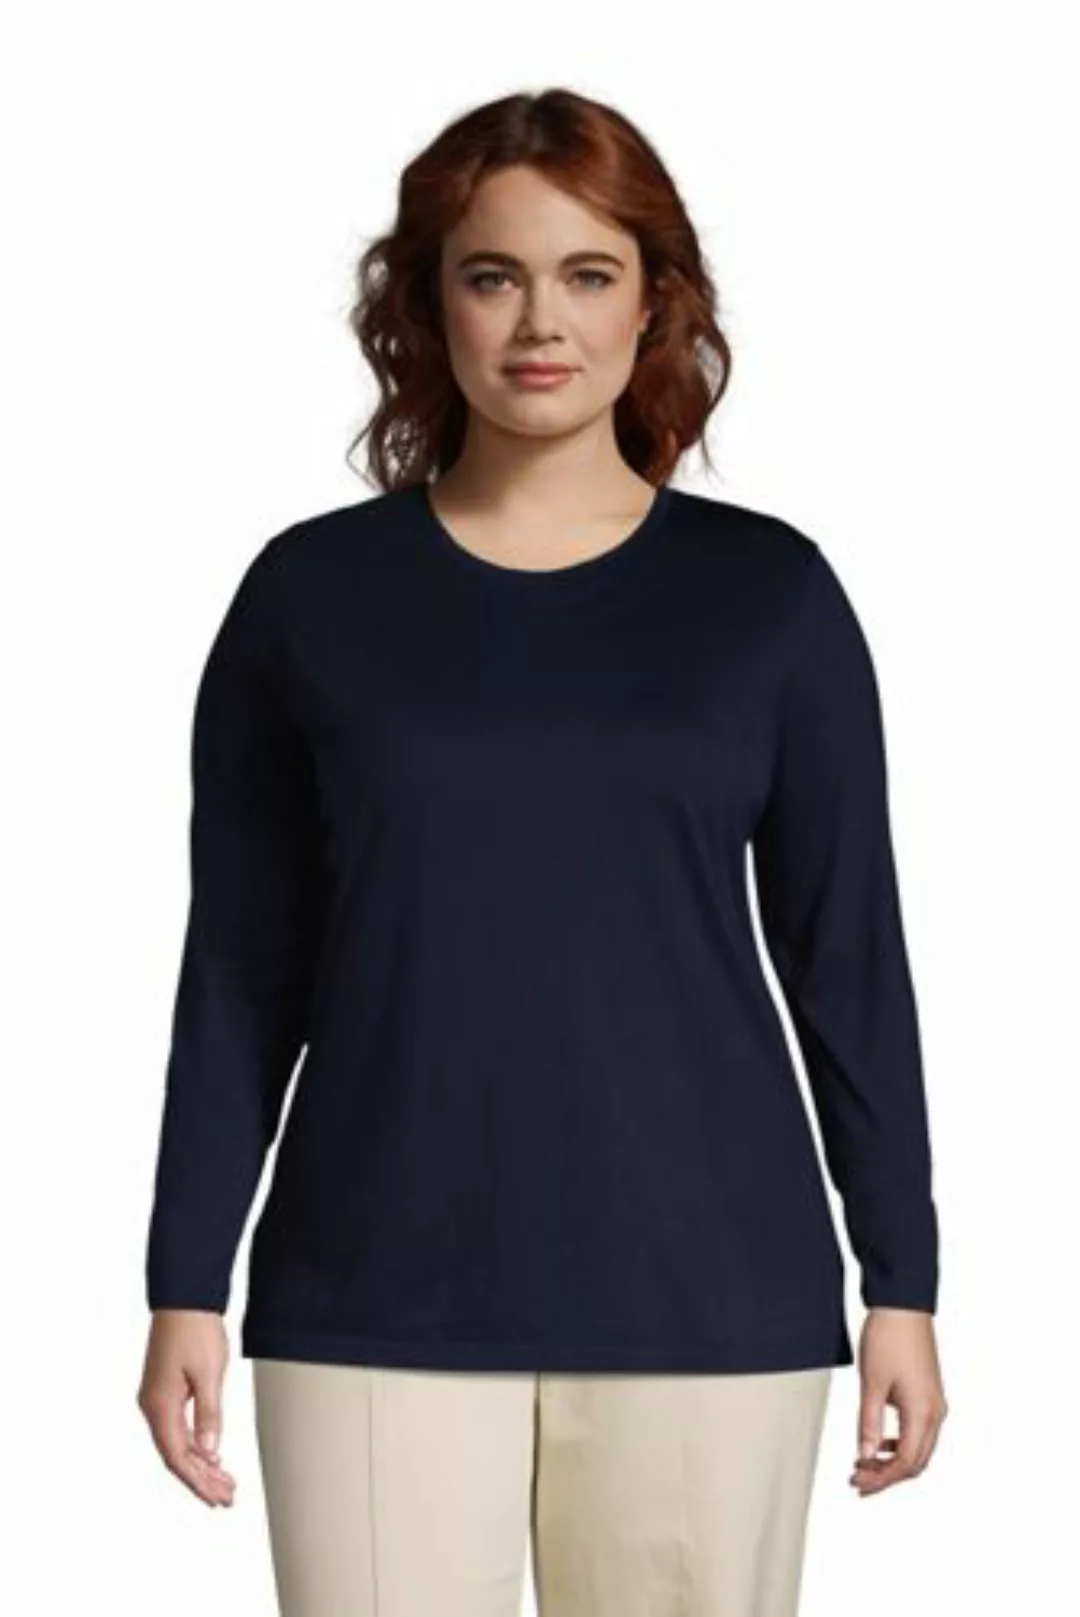 Supima-Shirt, Langarm in großen Größen, Damen, Größe: 52-54 Plusgrößen, Bla günstig online kaufen